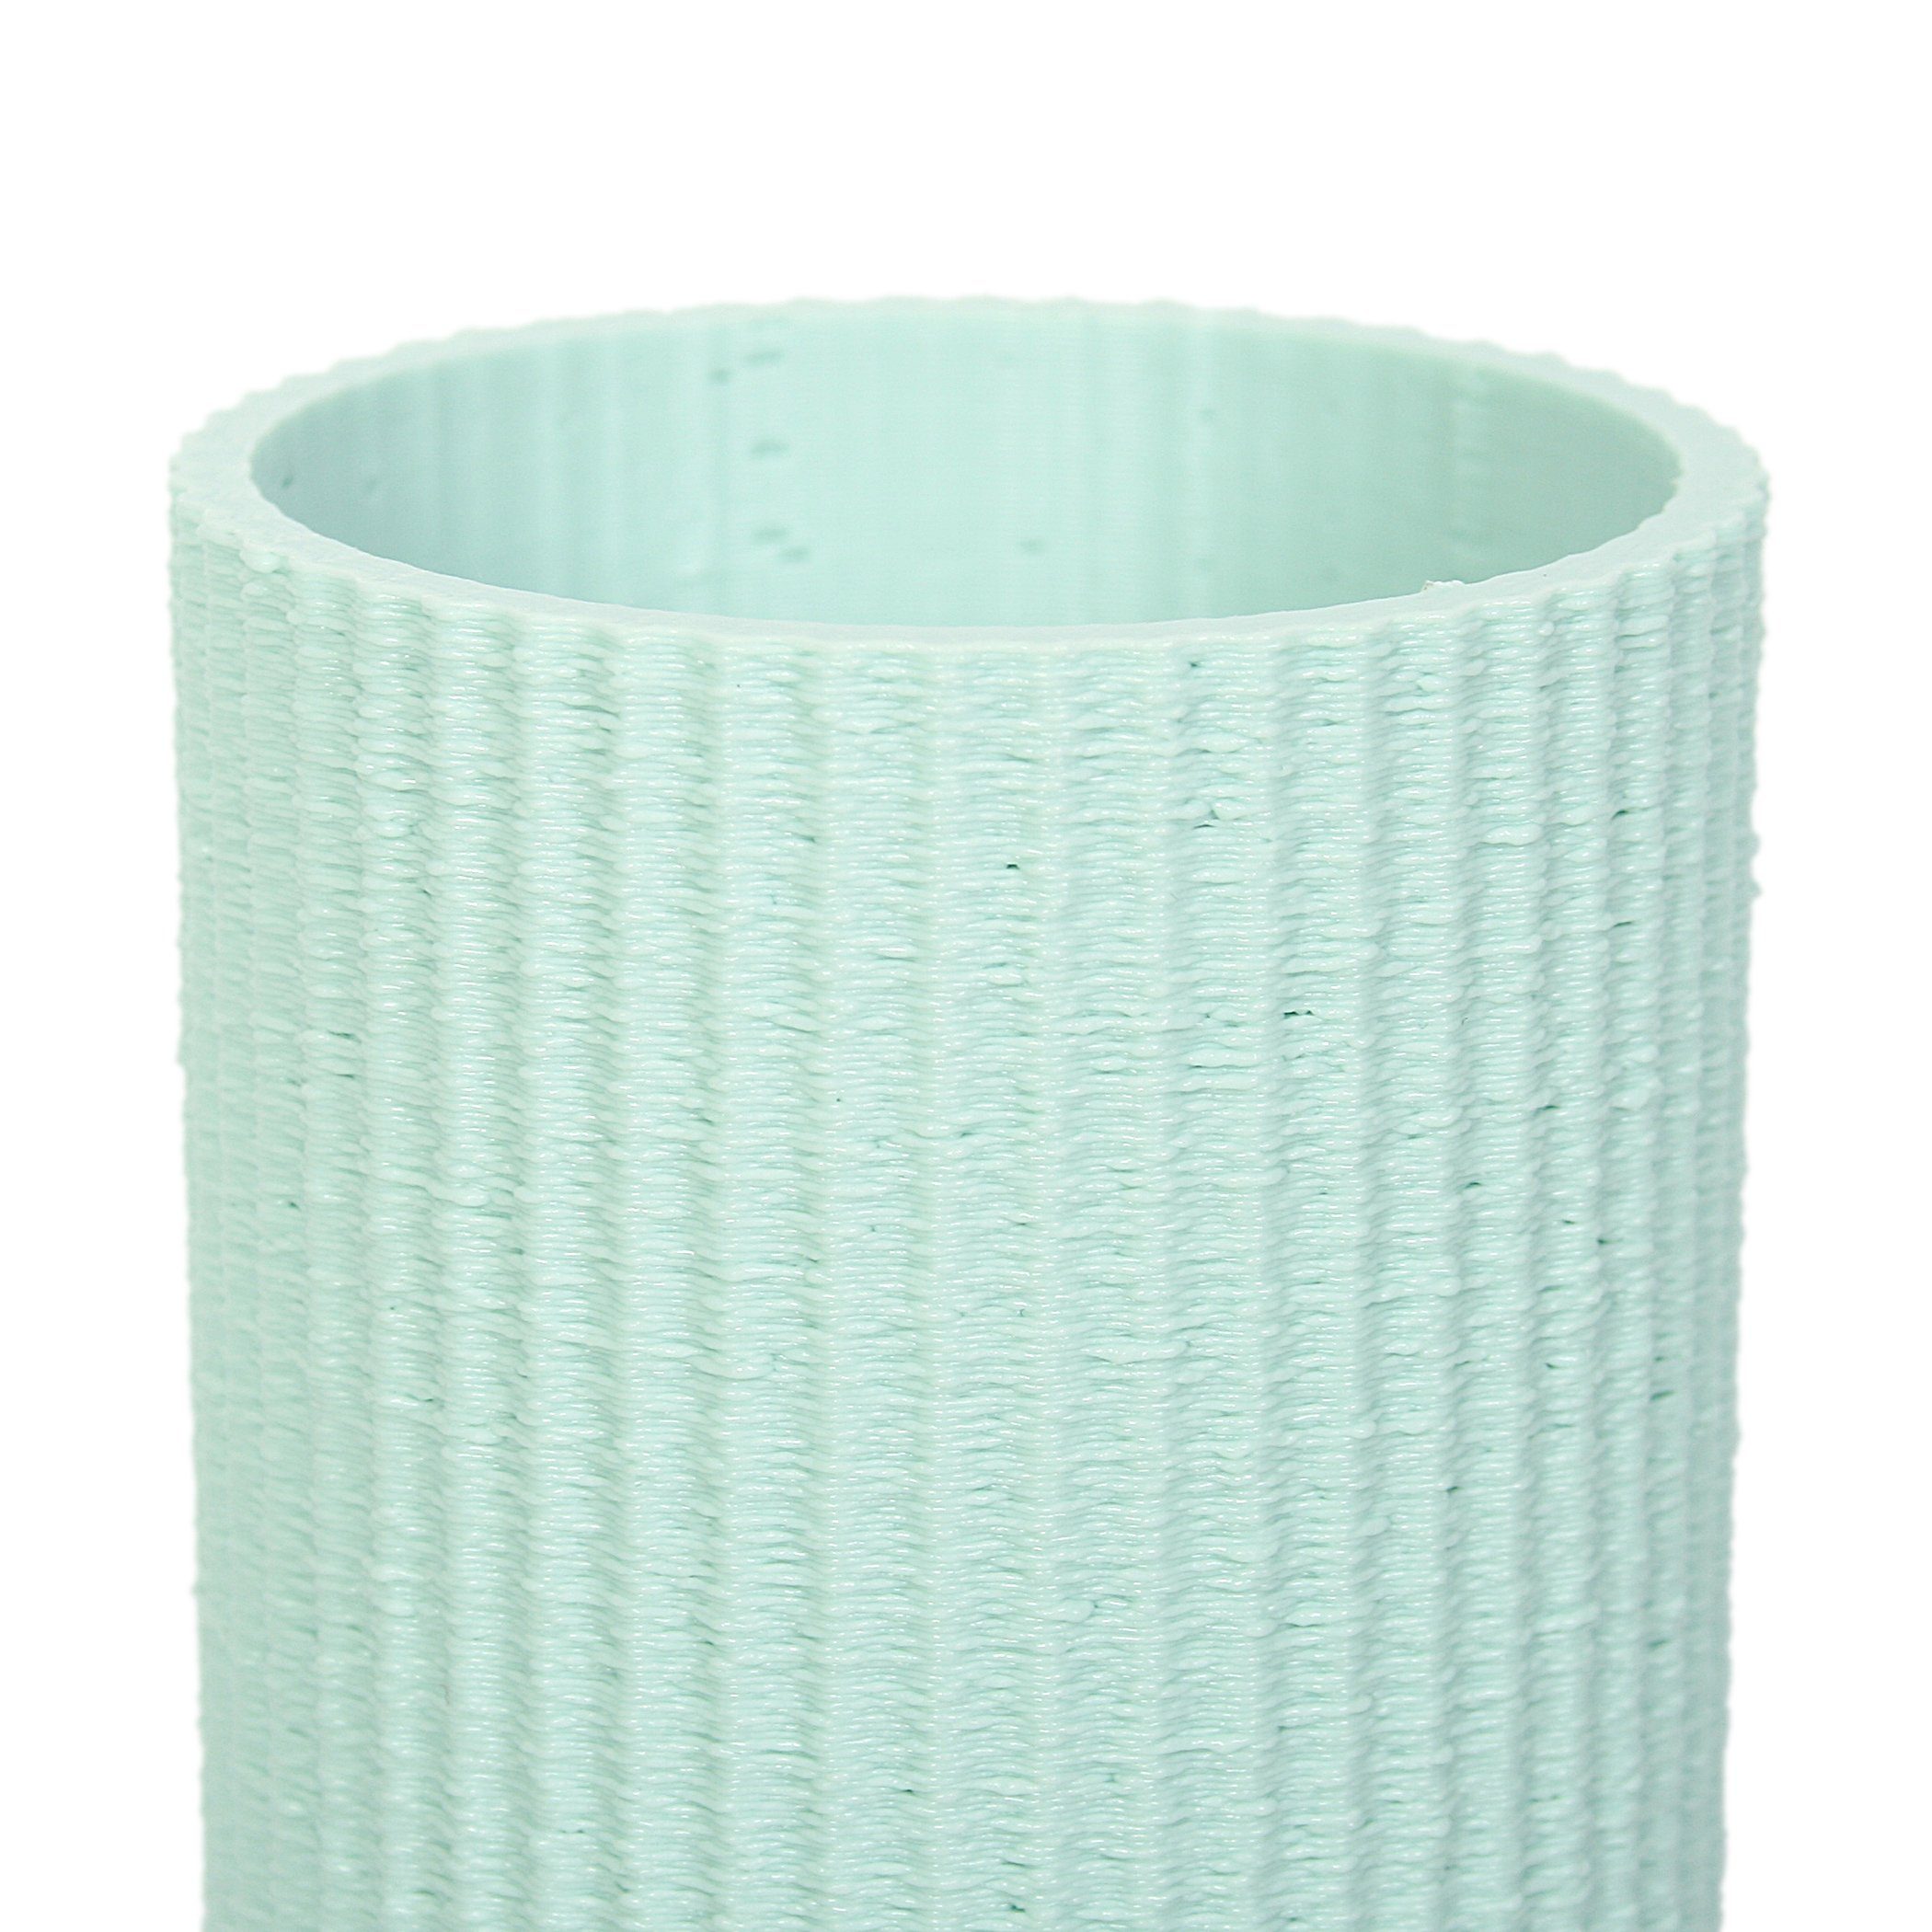 & Dekovase Blumenvase bruchsicher Vase Dekorative Rohstoffen; aus – Green nachwachsenden Feder wasserdicht aus Designer Water Bio-Kunststoff, Kreative